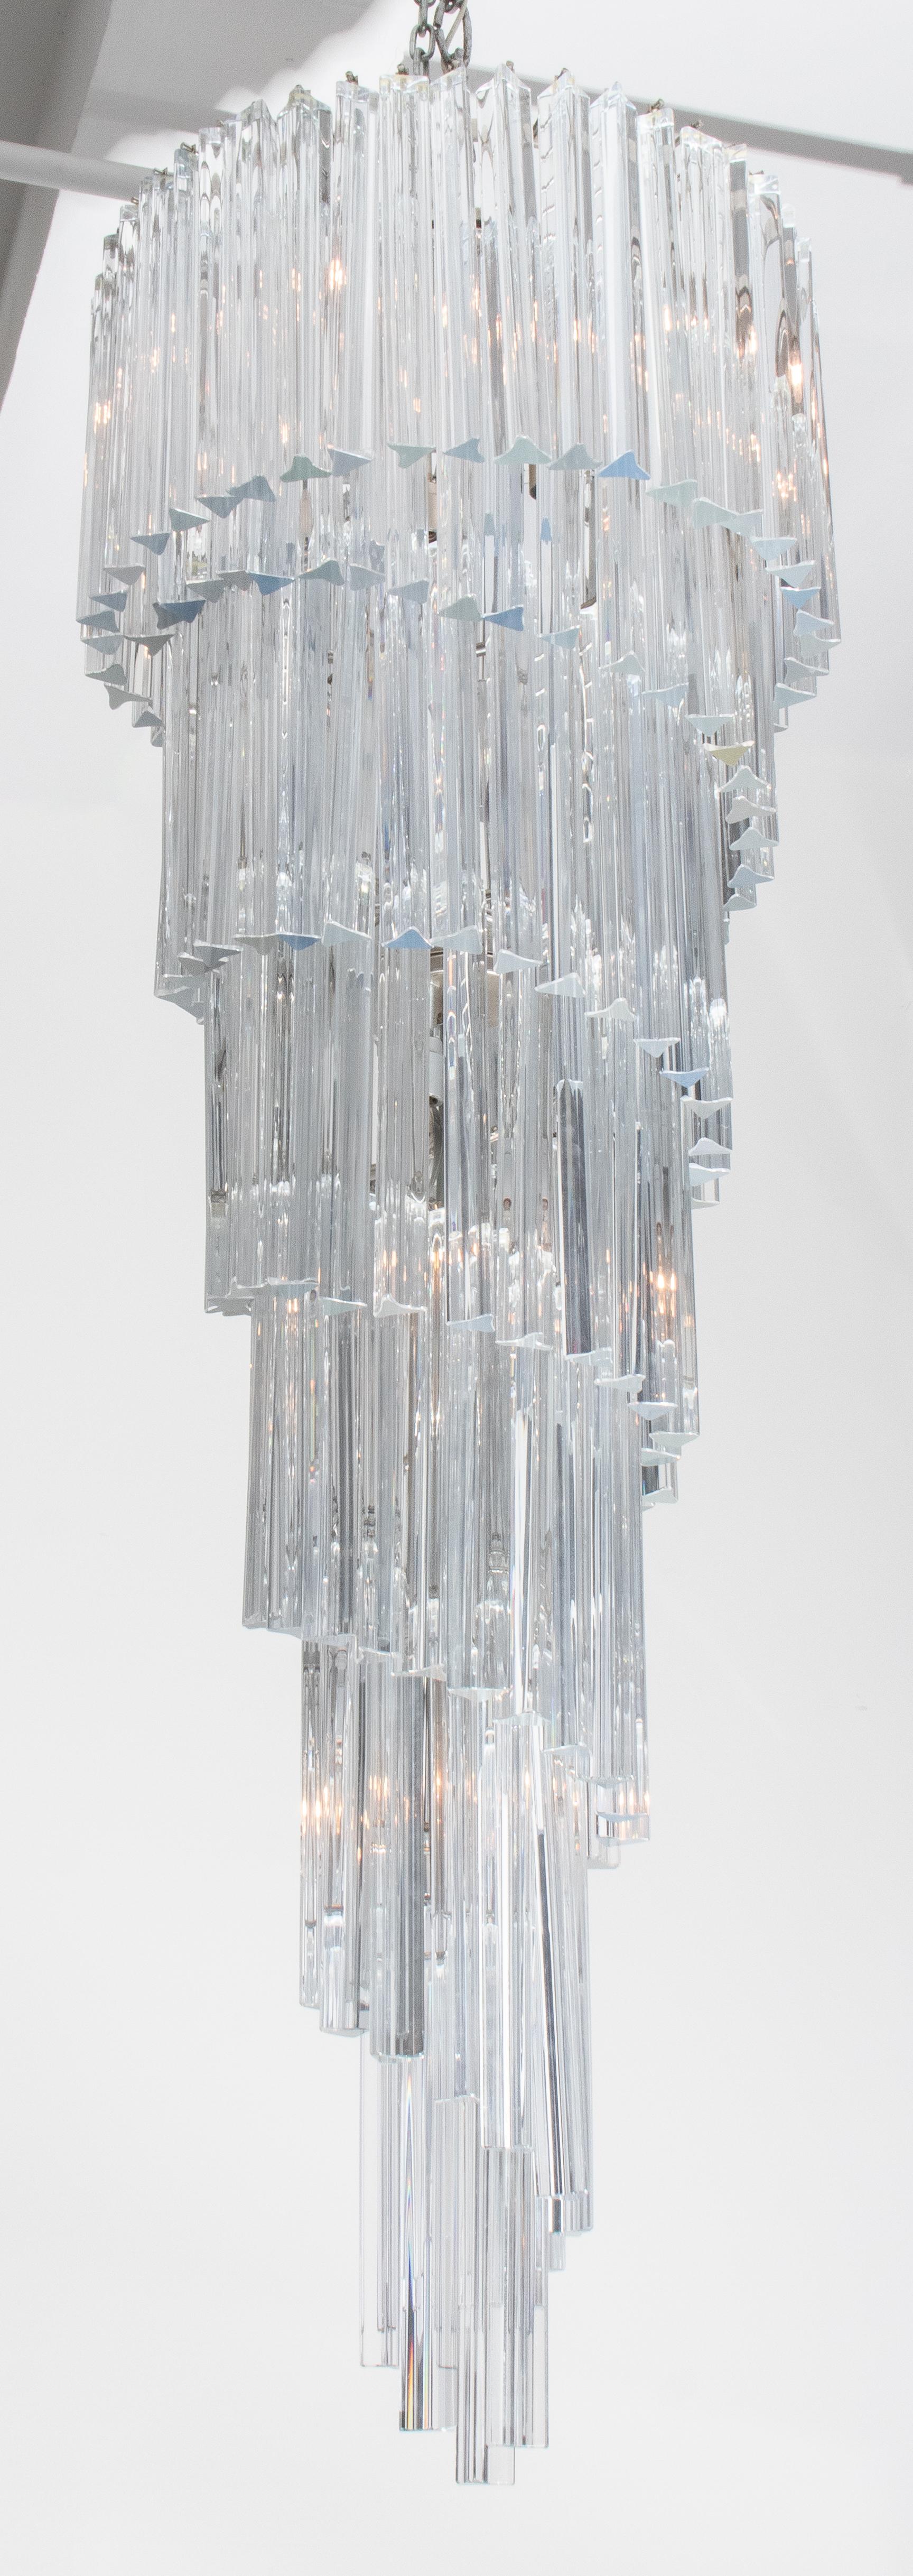 Venini Series Triedri Glass Cascading Spiral Chandelier. Provenance : Provenant d'une collection de la ville de New York.

Concessionnaire : S138XX